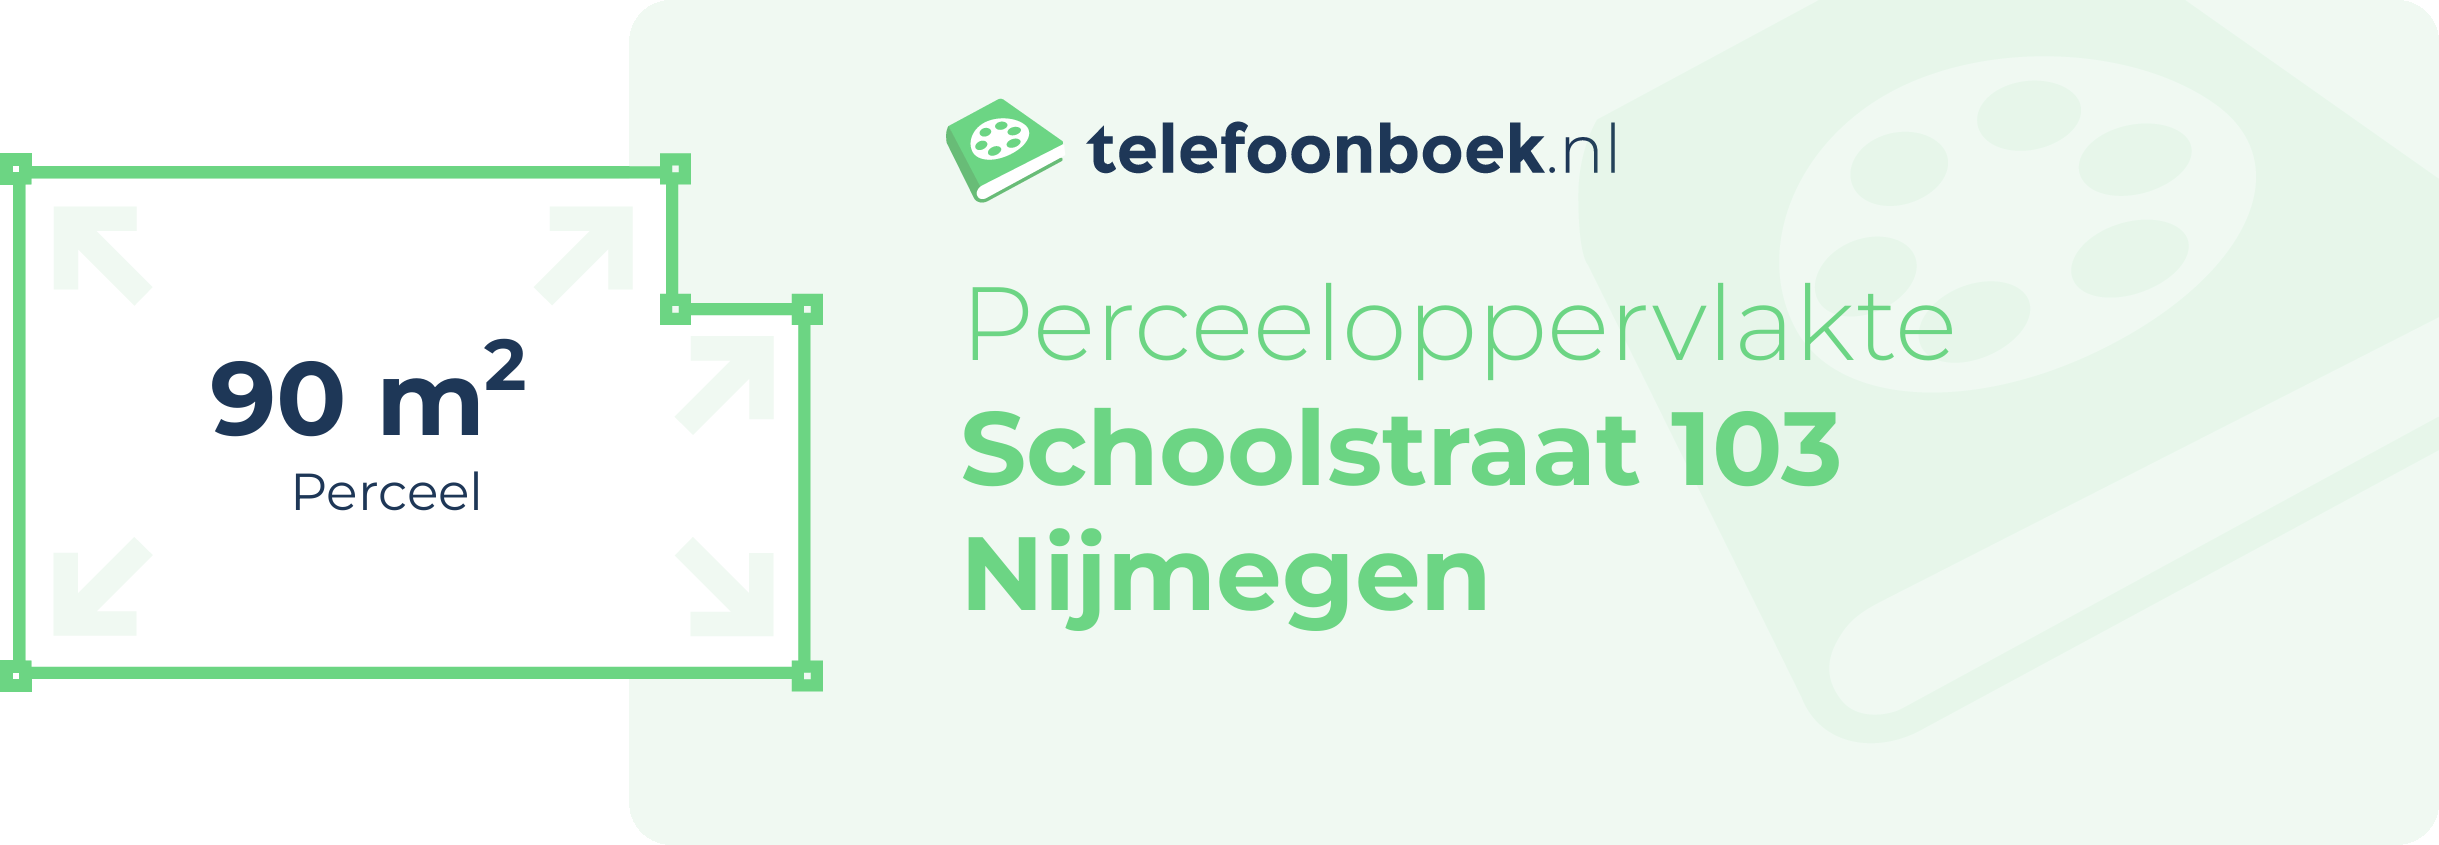 Perceeloppervlakte Schoolstraat 103 Nijmegen